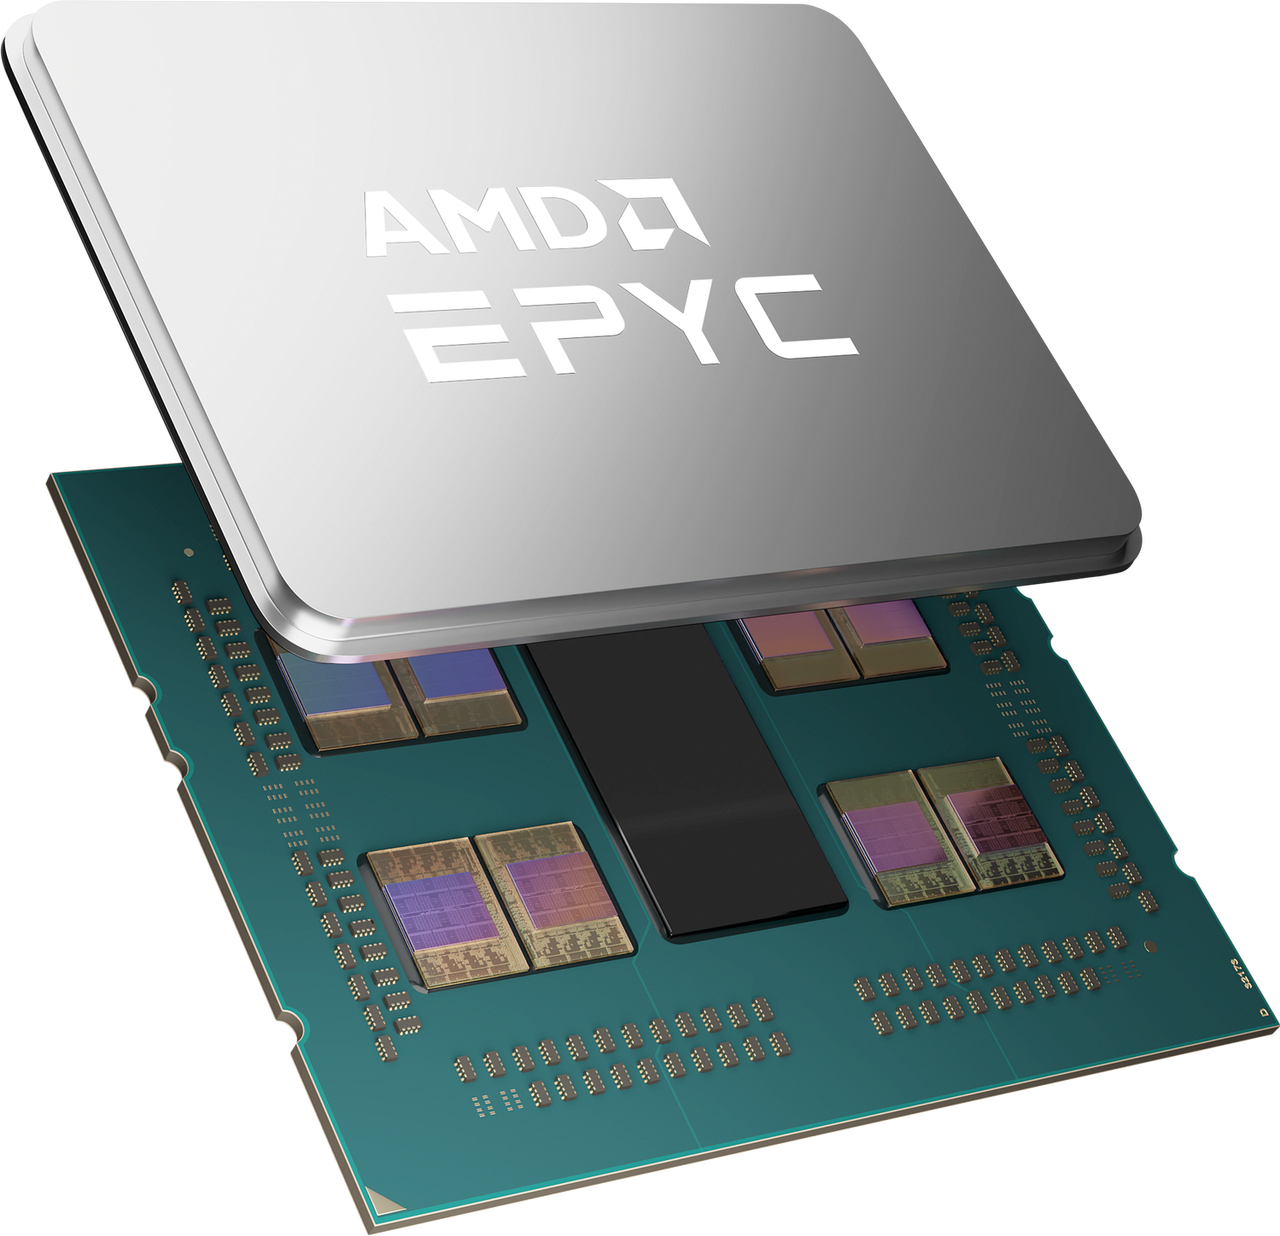 Nowości dla sektora profesjonalnego od AMD. Procesory EPYC oraz akceleratory Instinct - EPYC